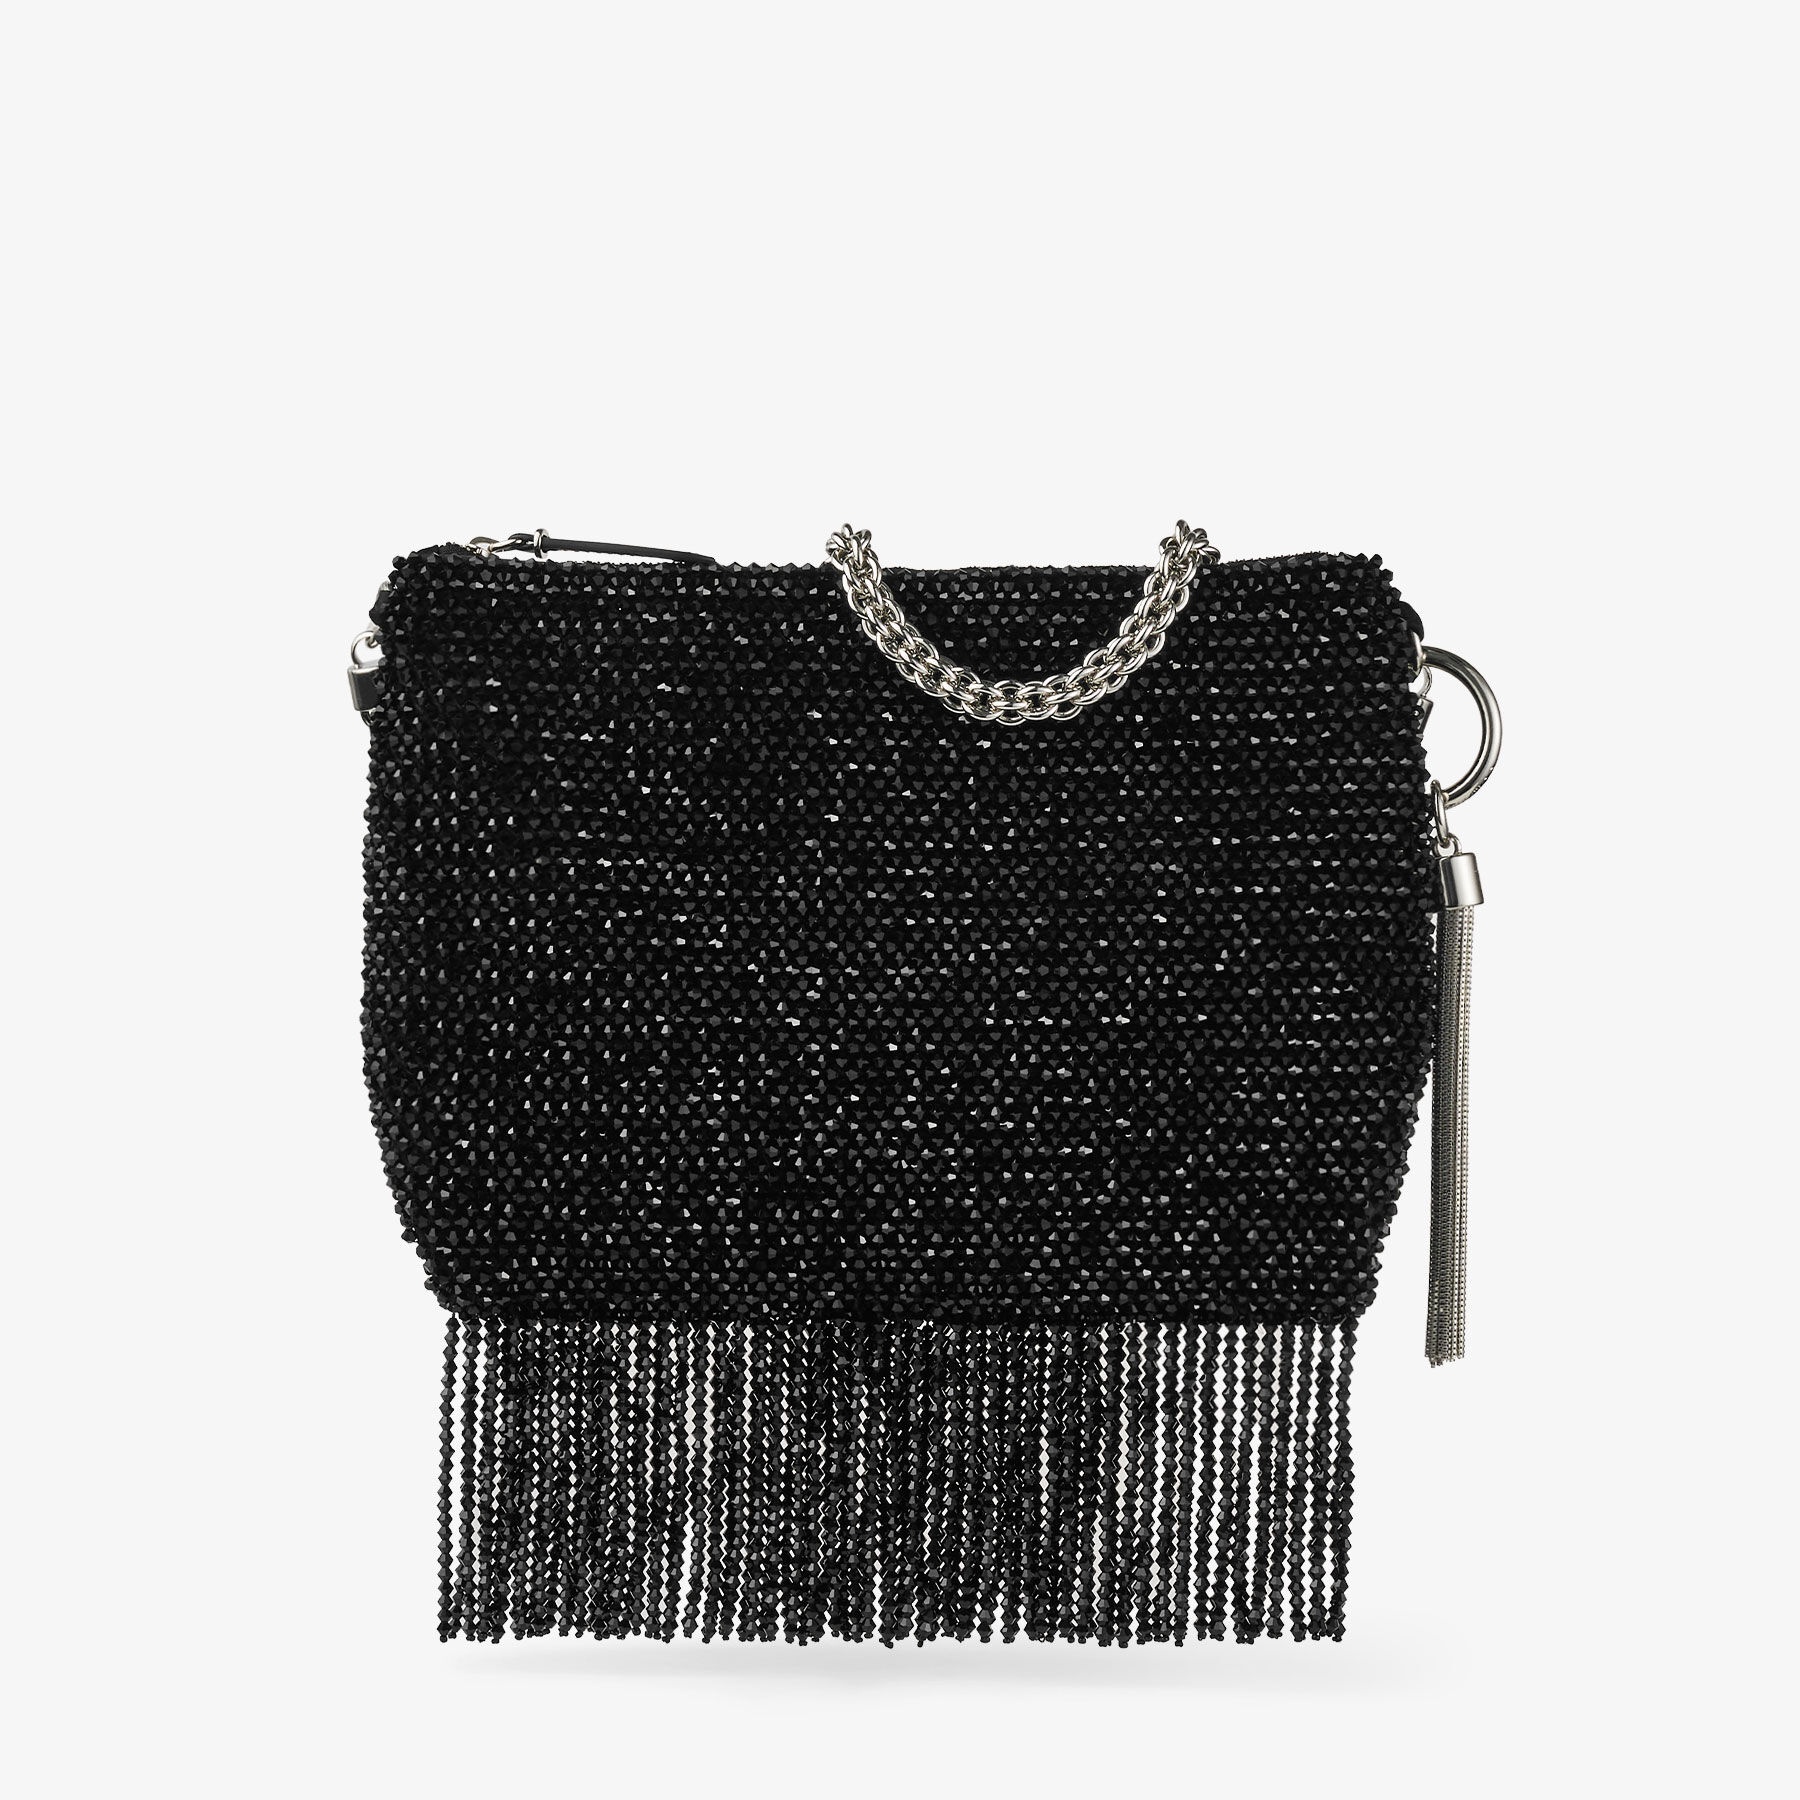 Callie  Shoulder
Black Satin Shoulder Bag with Crystal Fringe - 6